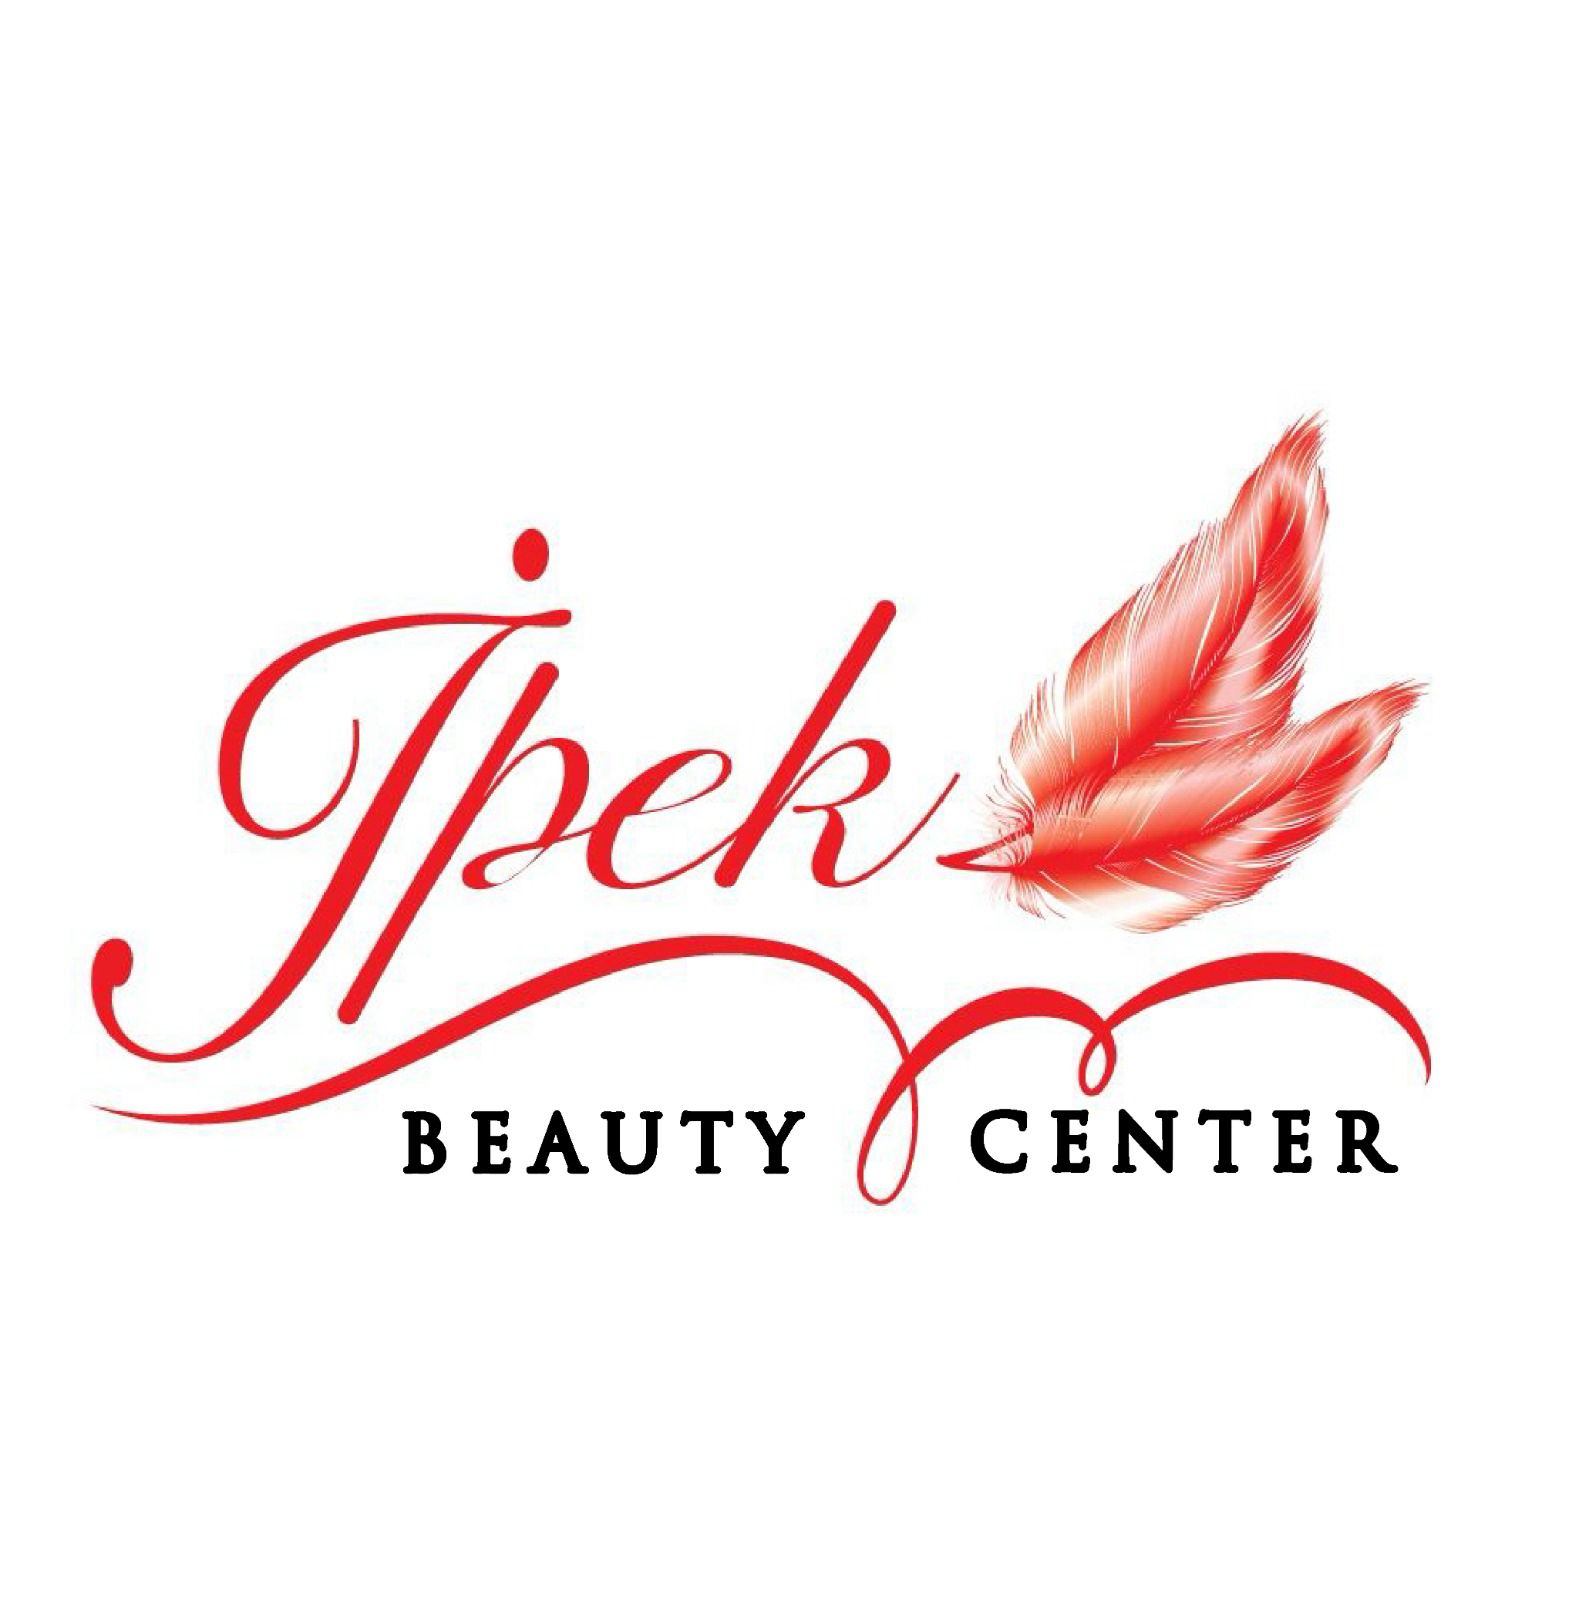 İpek Beauty Center